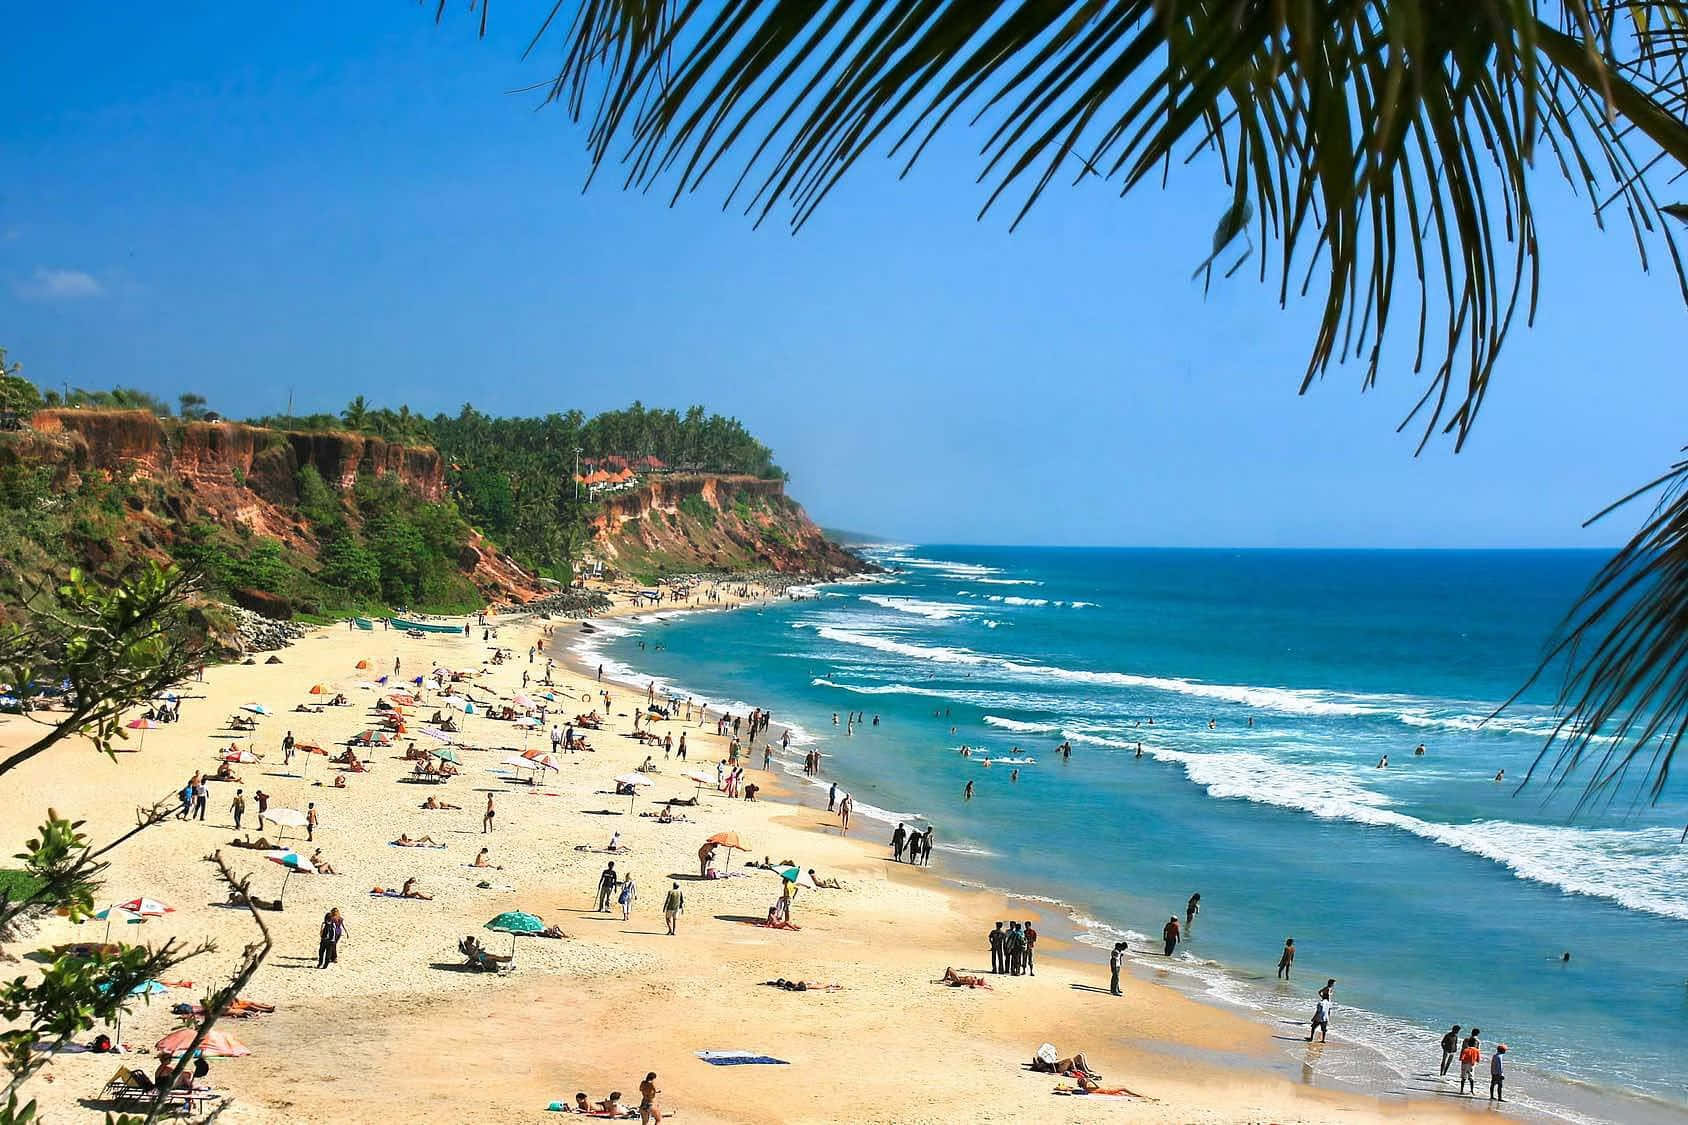 Experience paradise with Goa beach